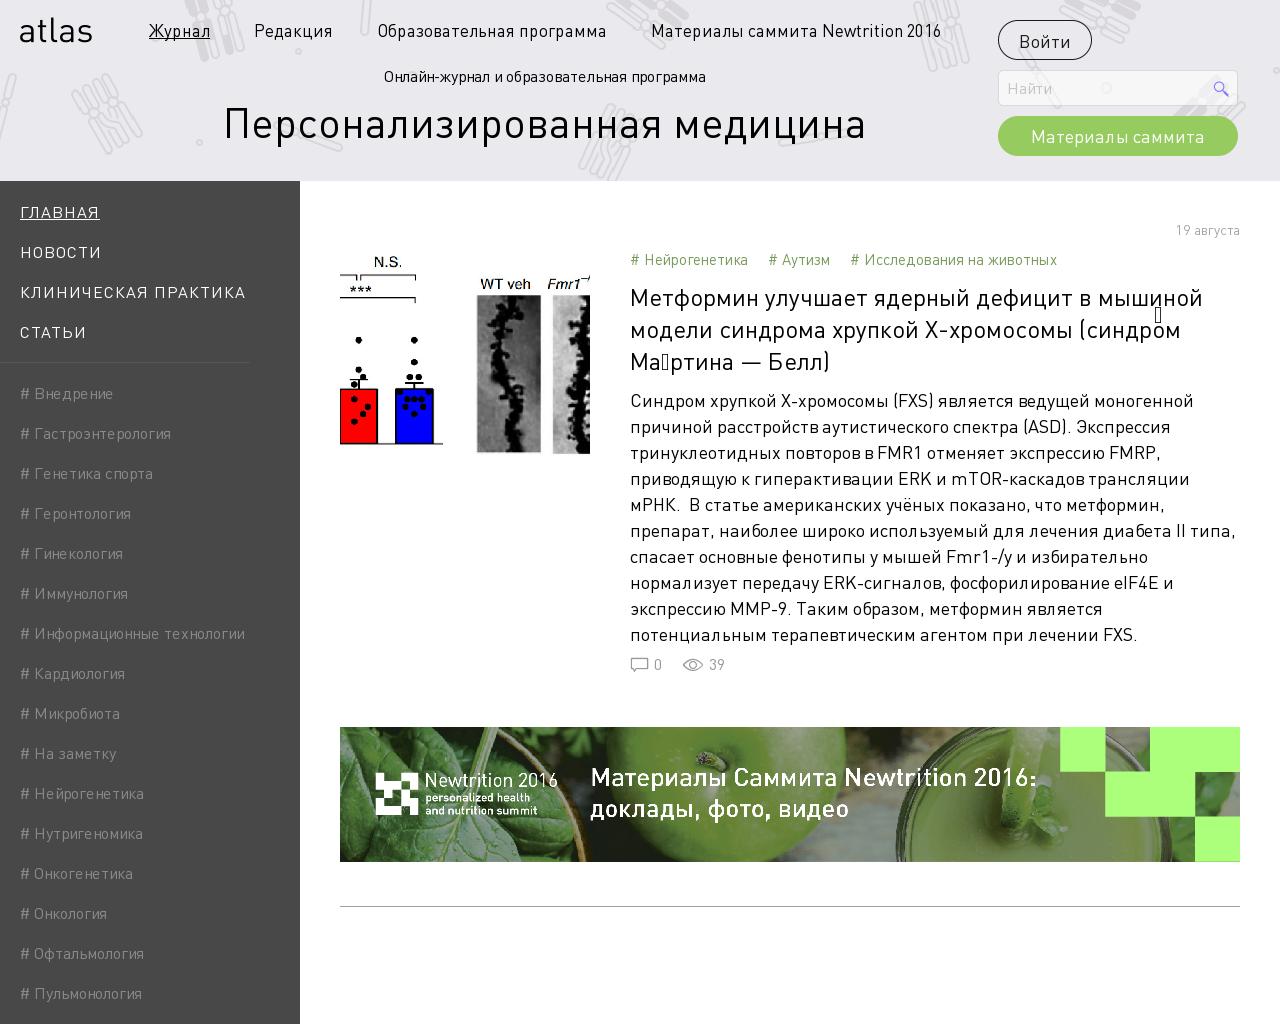 Изображение сайта atlasmed.ru в разрешении 1280x1024